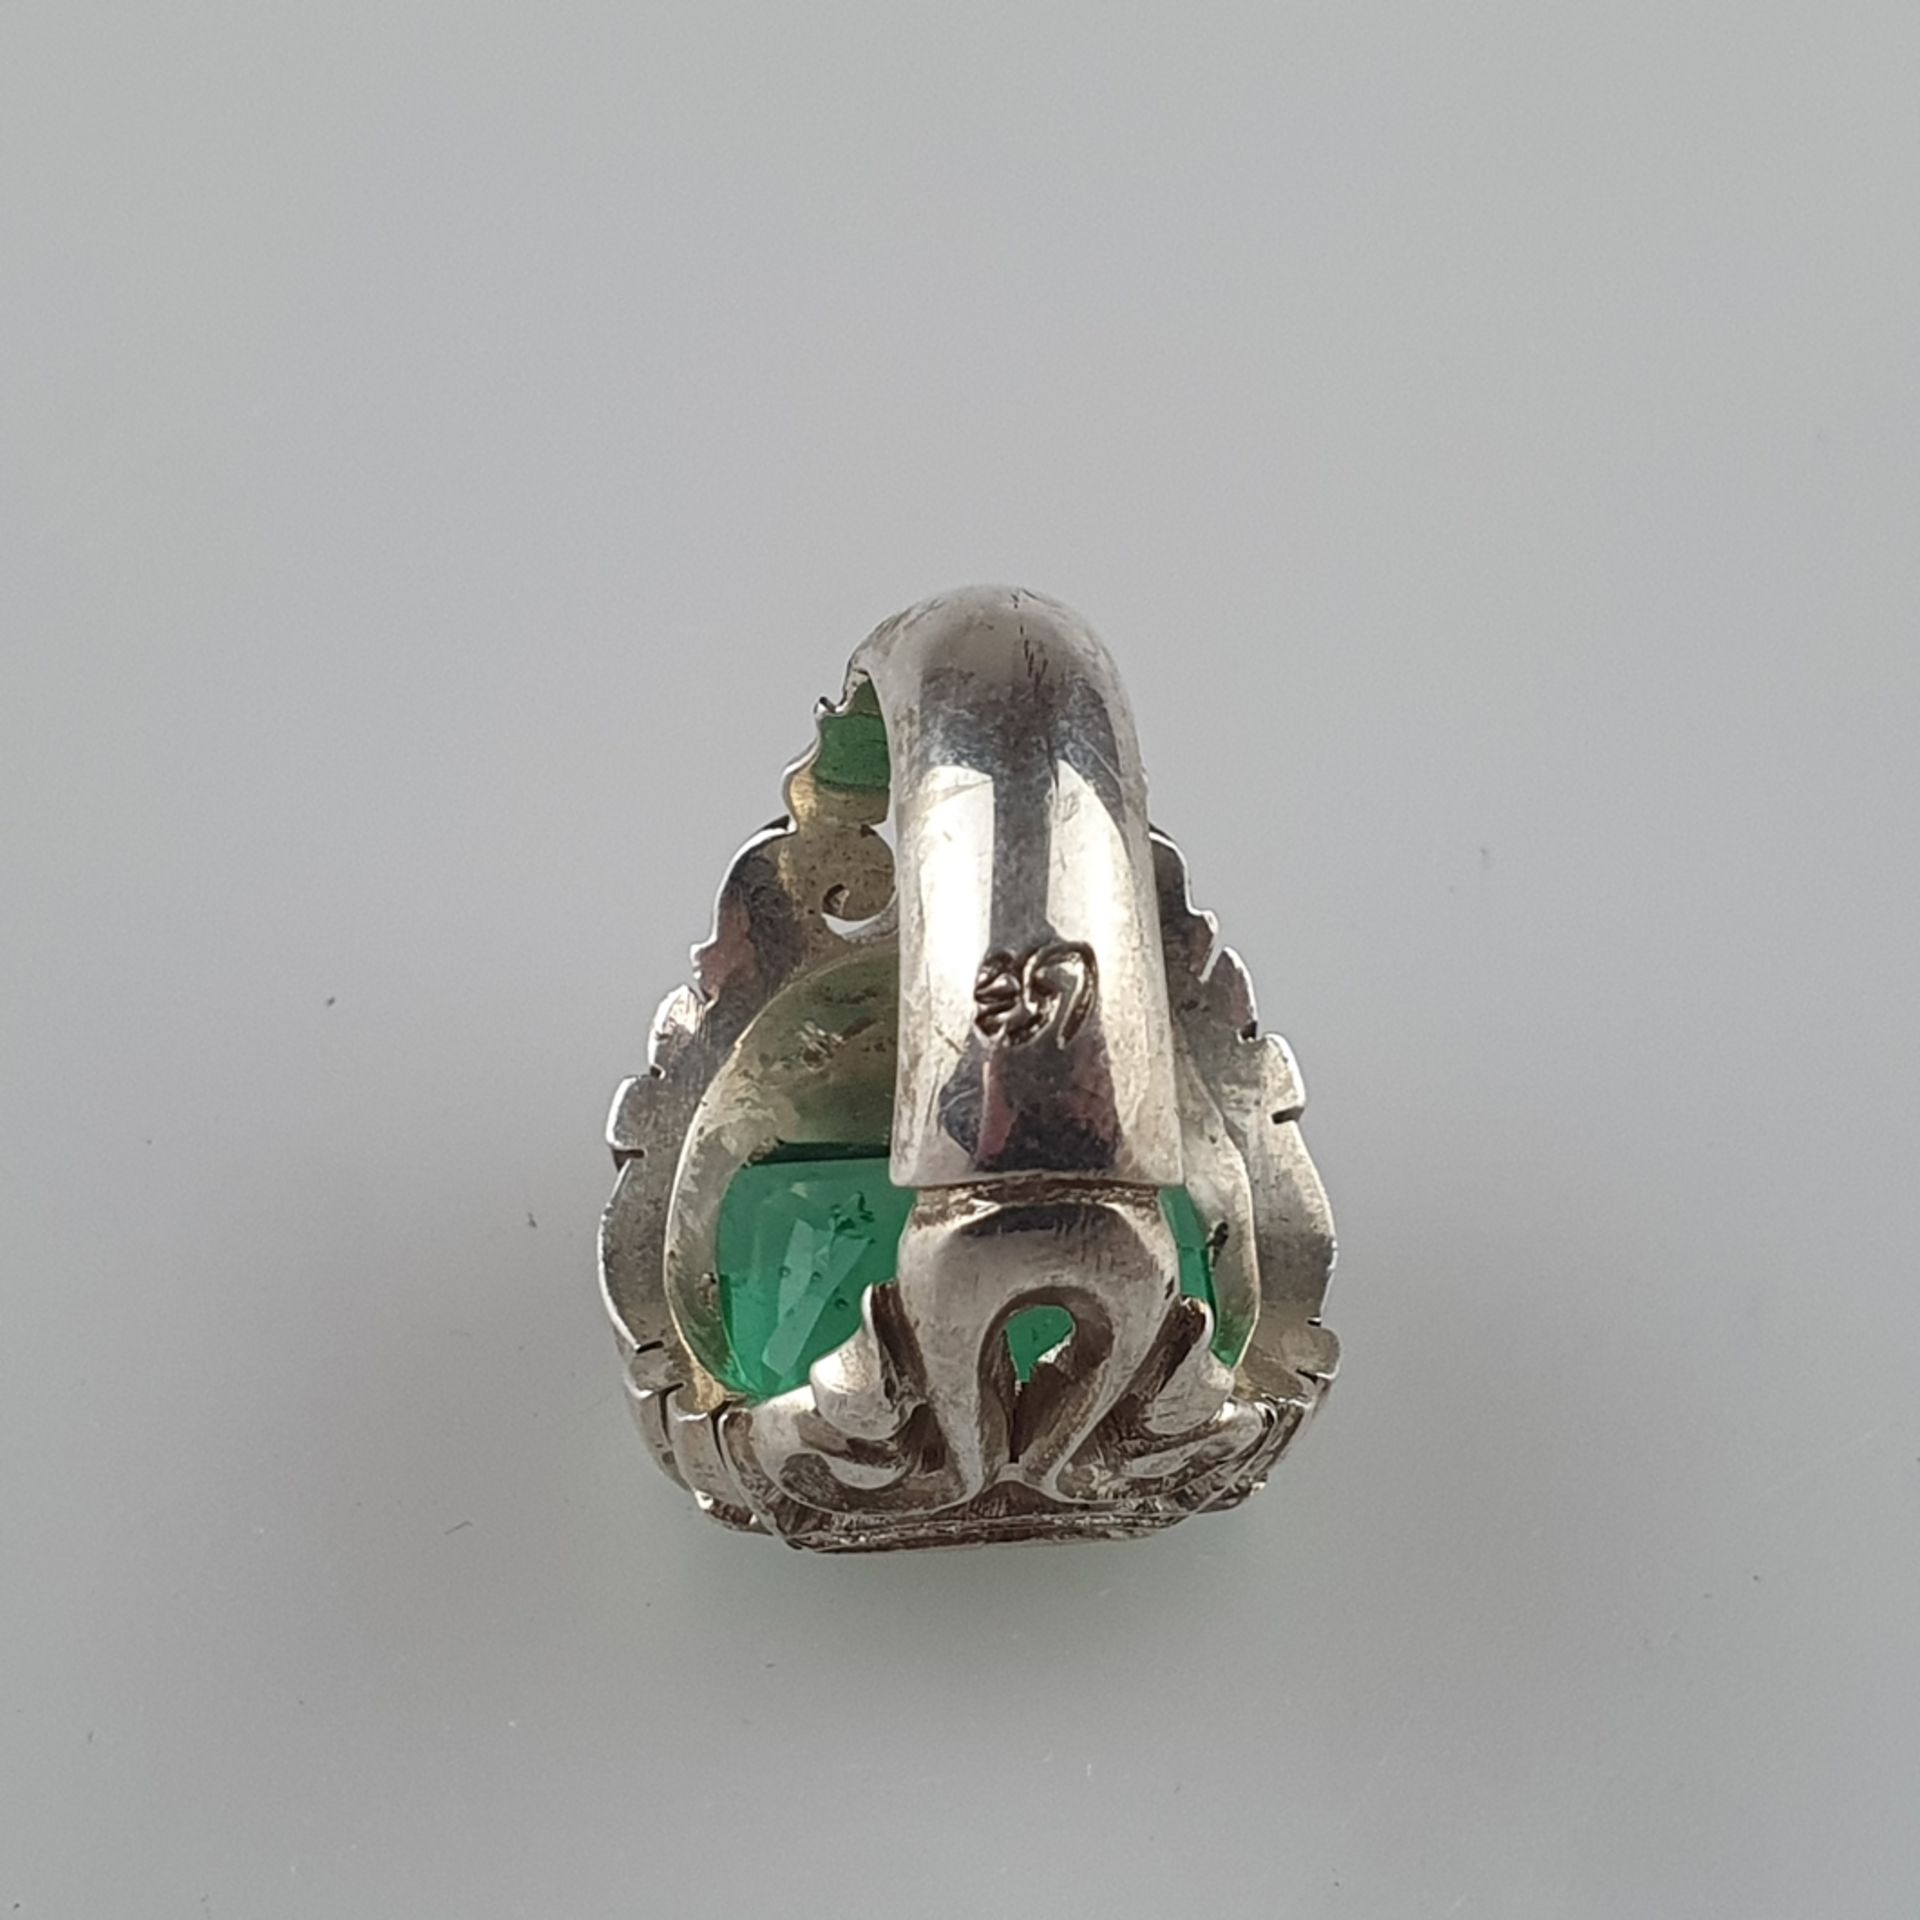 Schwerer Herrenring mit Smaragd - Silber massiv, Fassung ornamental durchbrochen, Ringkopf besetzt - Image 5 of 8